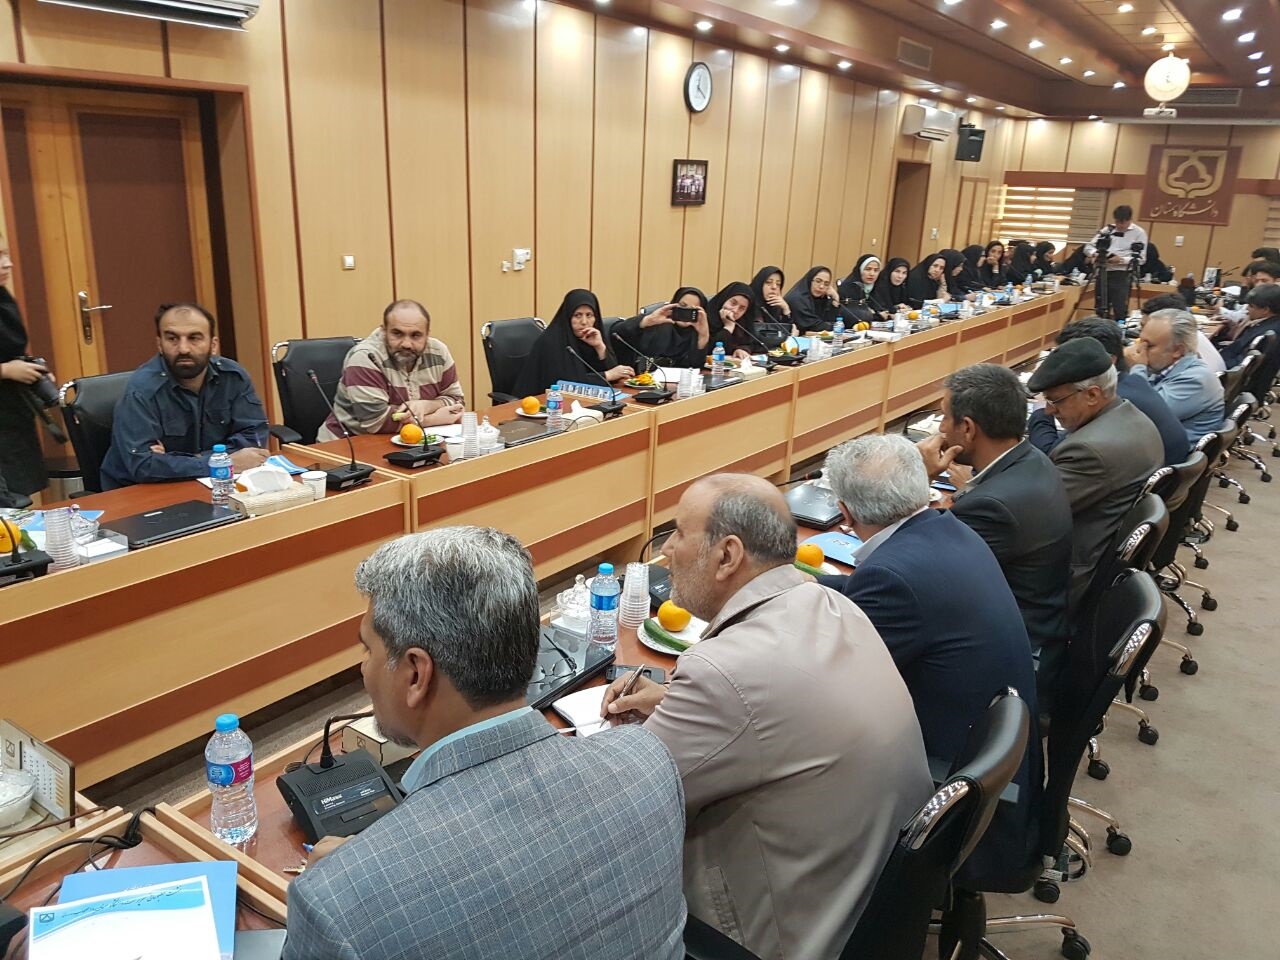  همایش بین المللی انجمن مهندسان مکانیک ایران در سمنان برگزار خواهد شد 